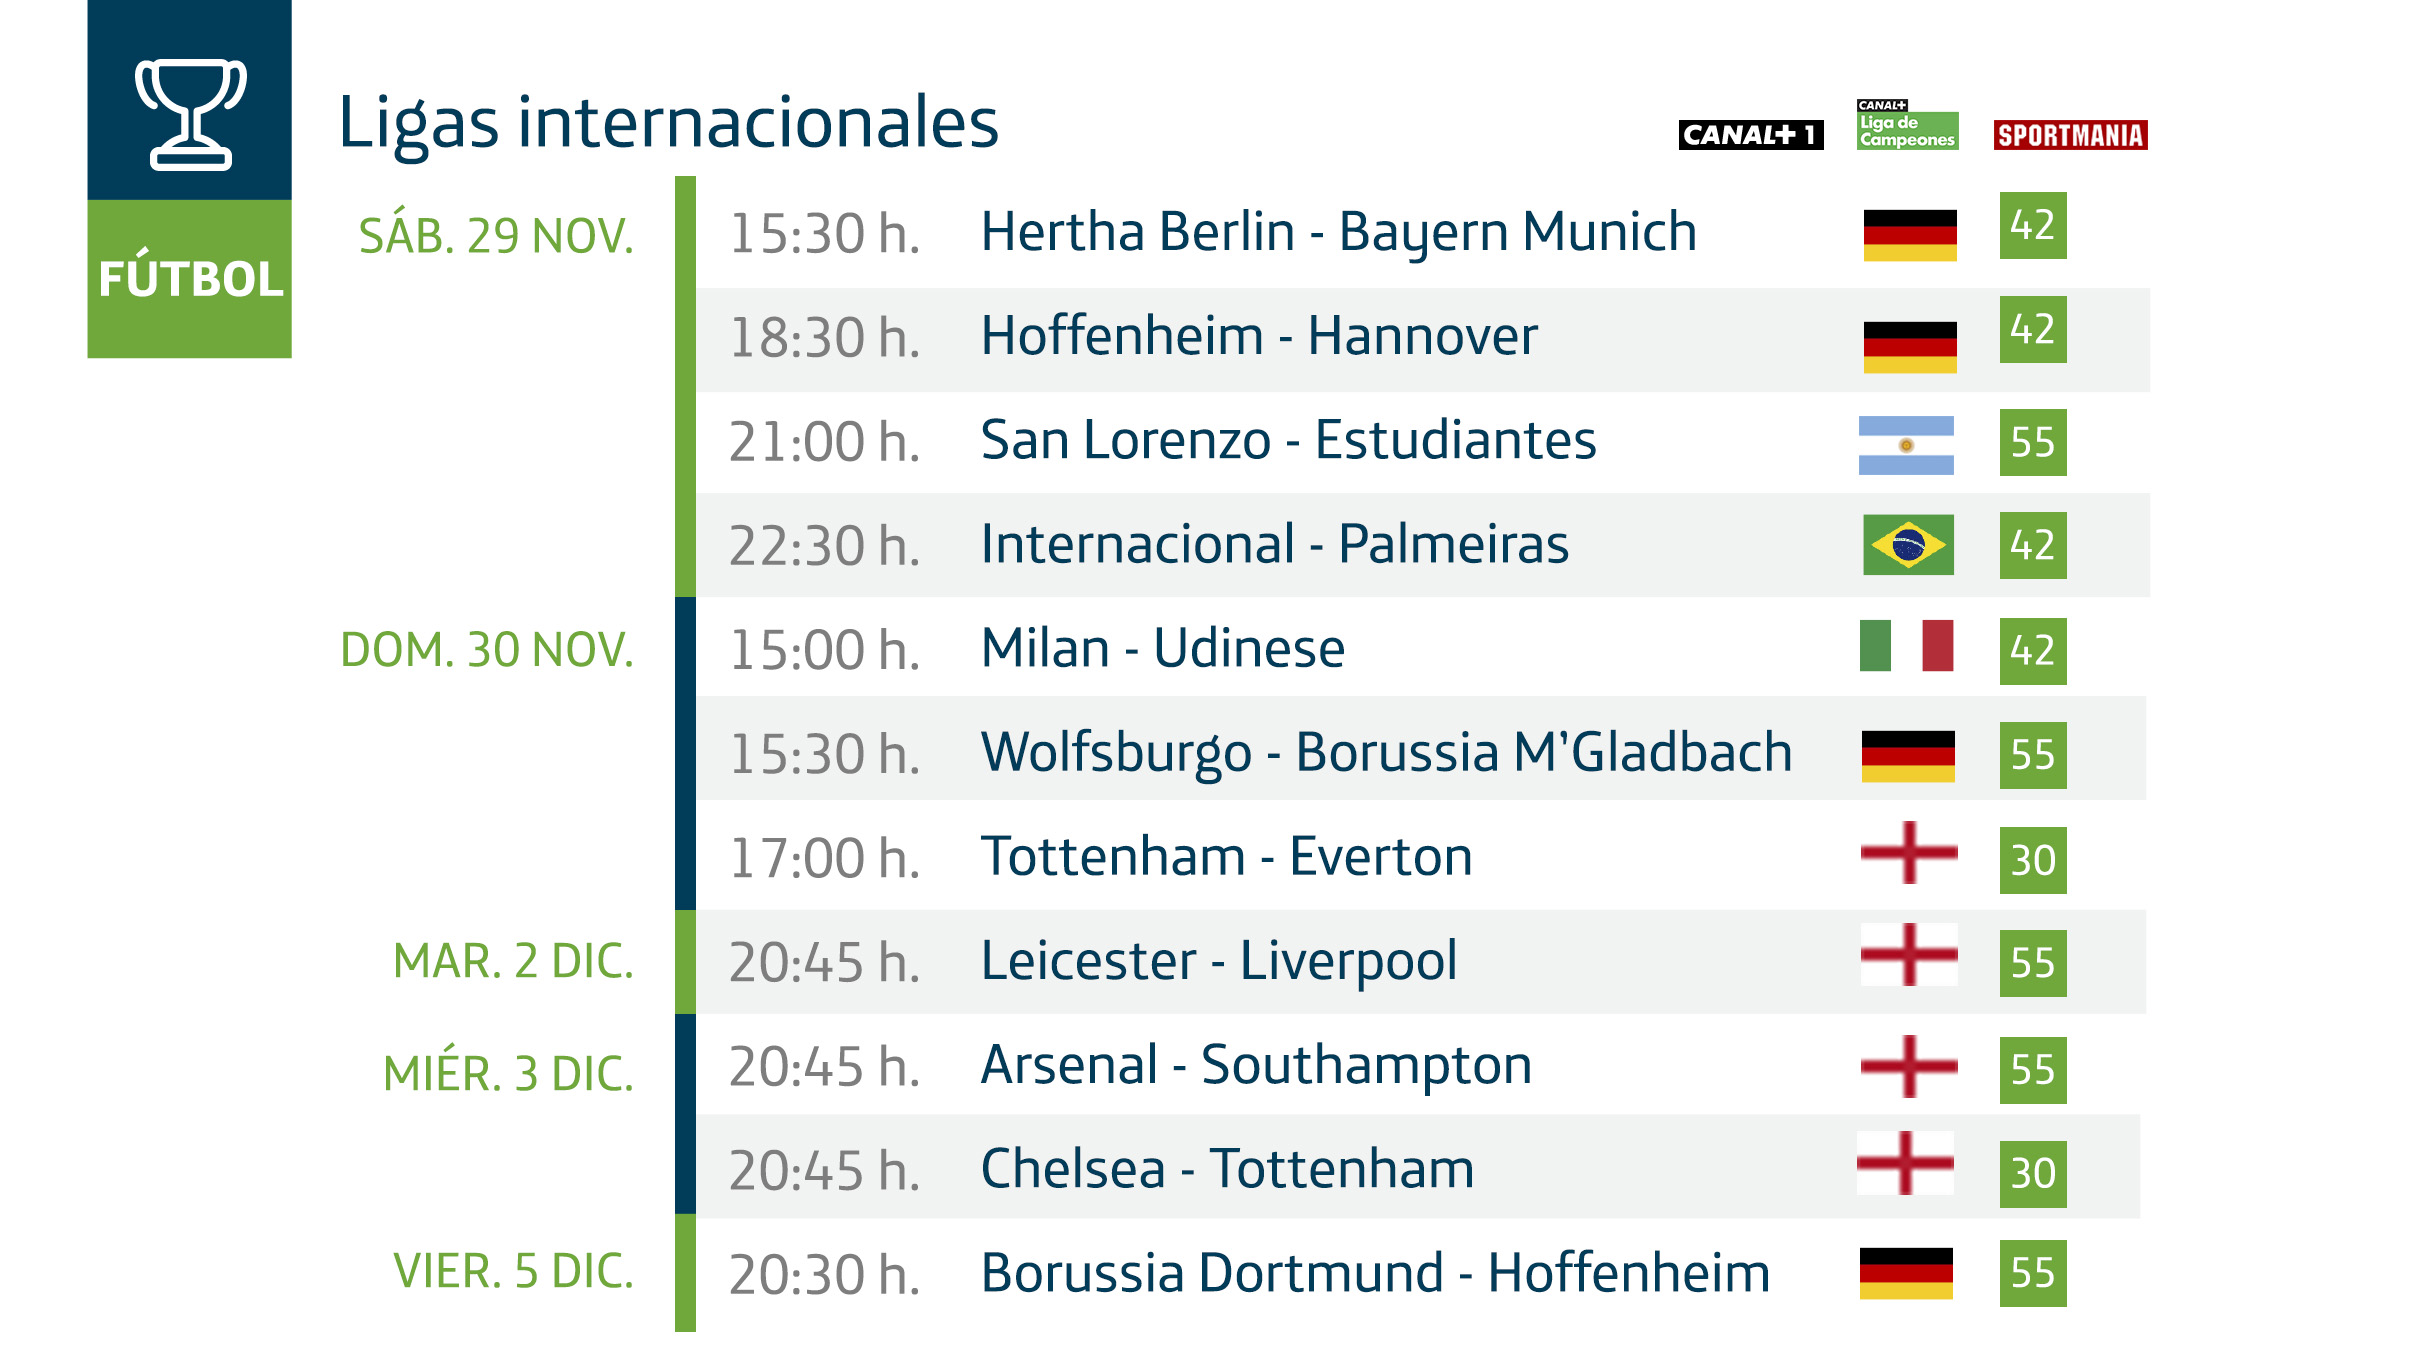 Horario de los partidos de ligas internacionales